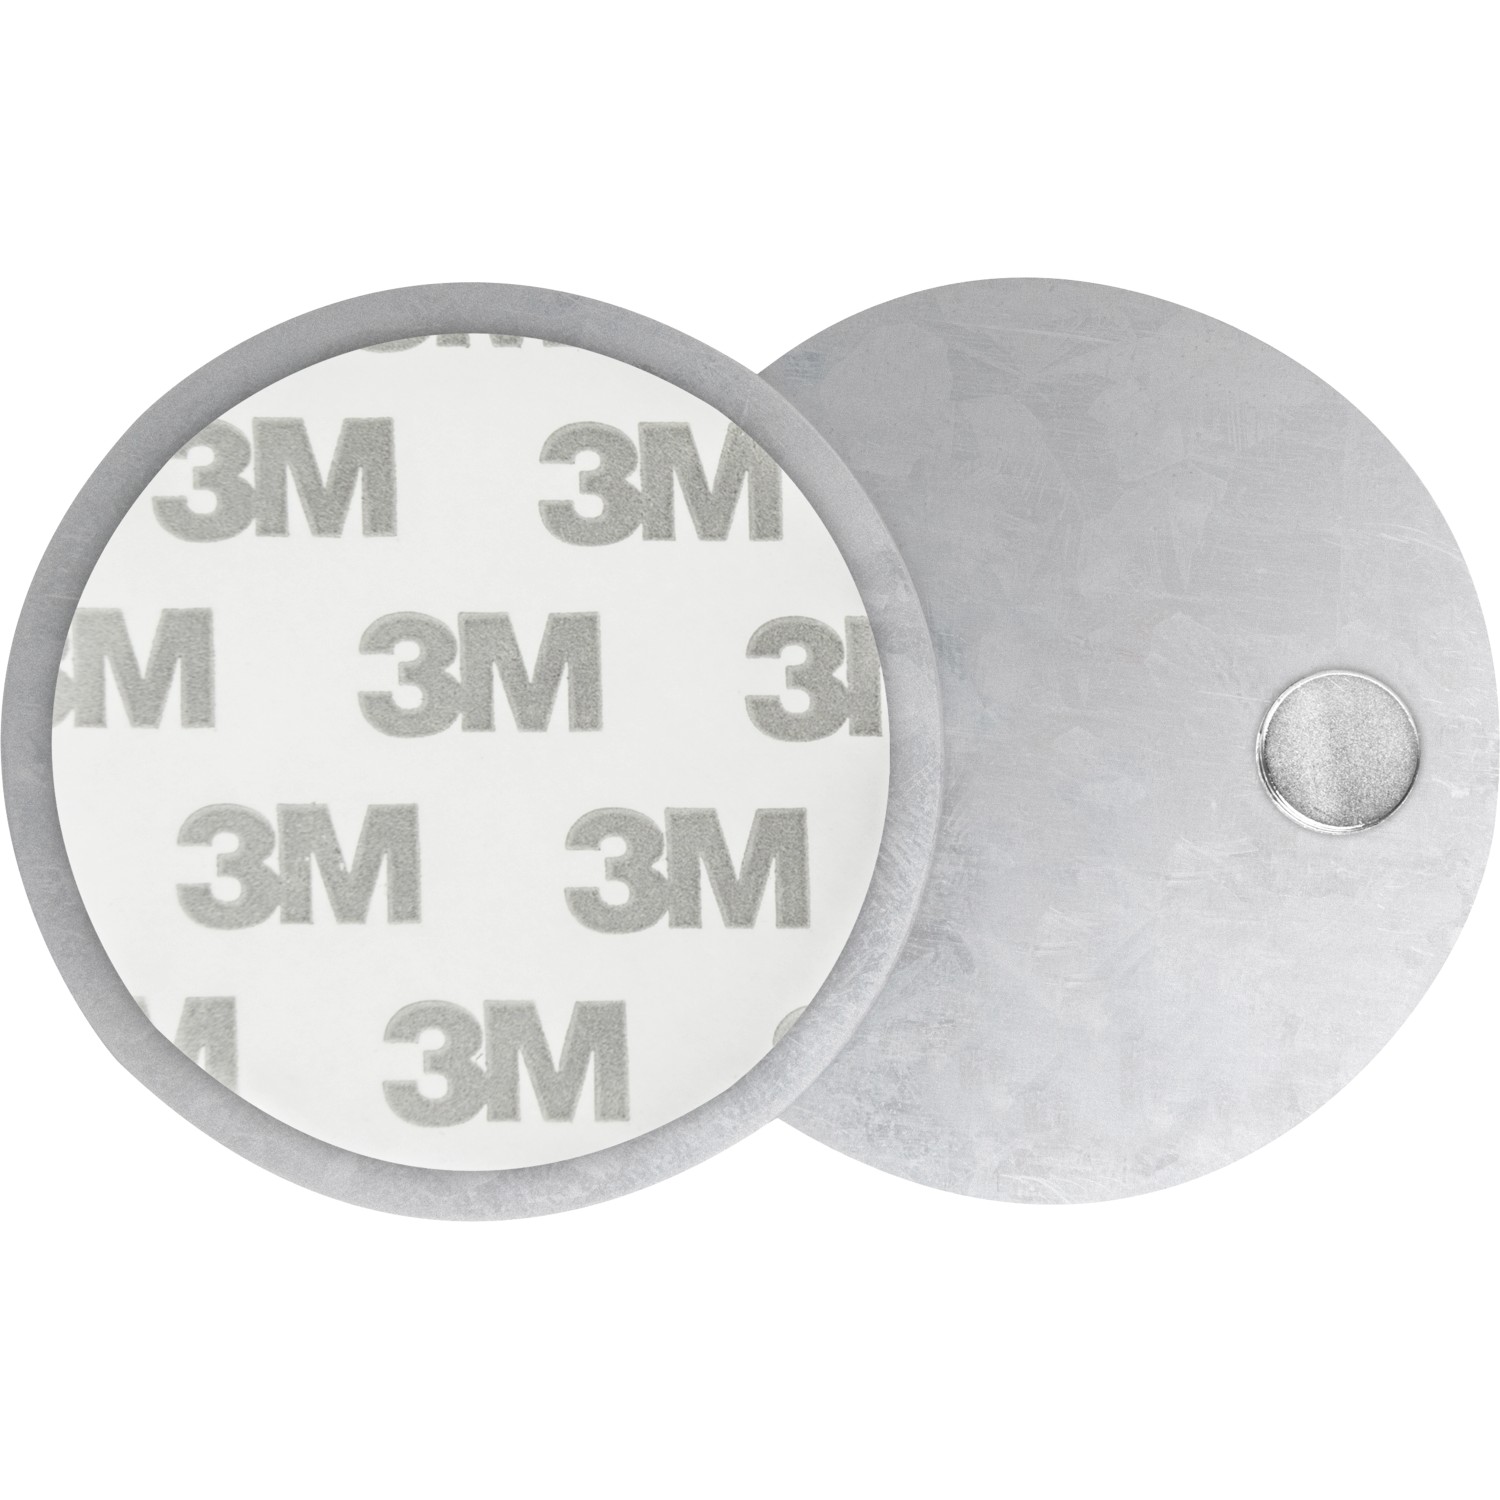 Magnetpad für Rauchmelder Ø 7 cm kaufen bei OBI